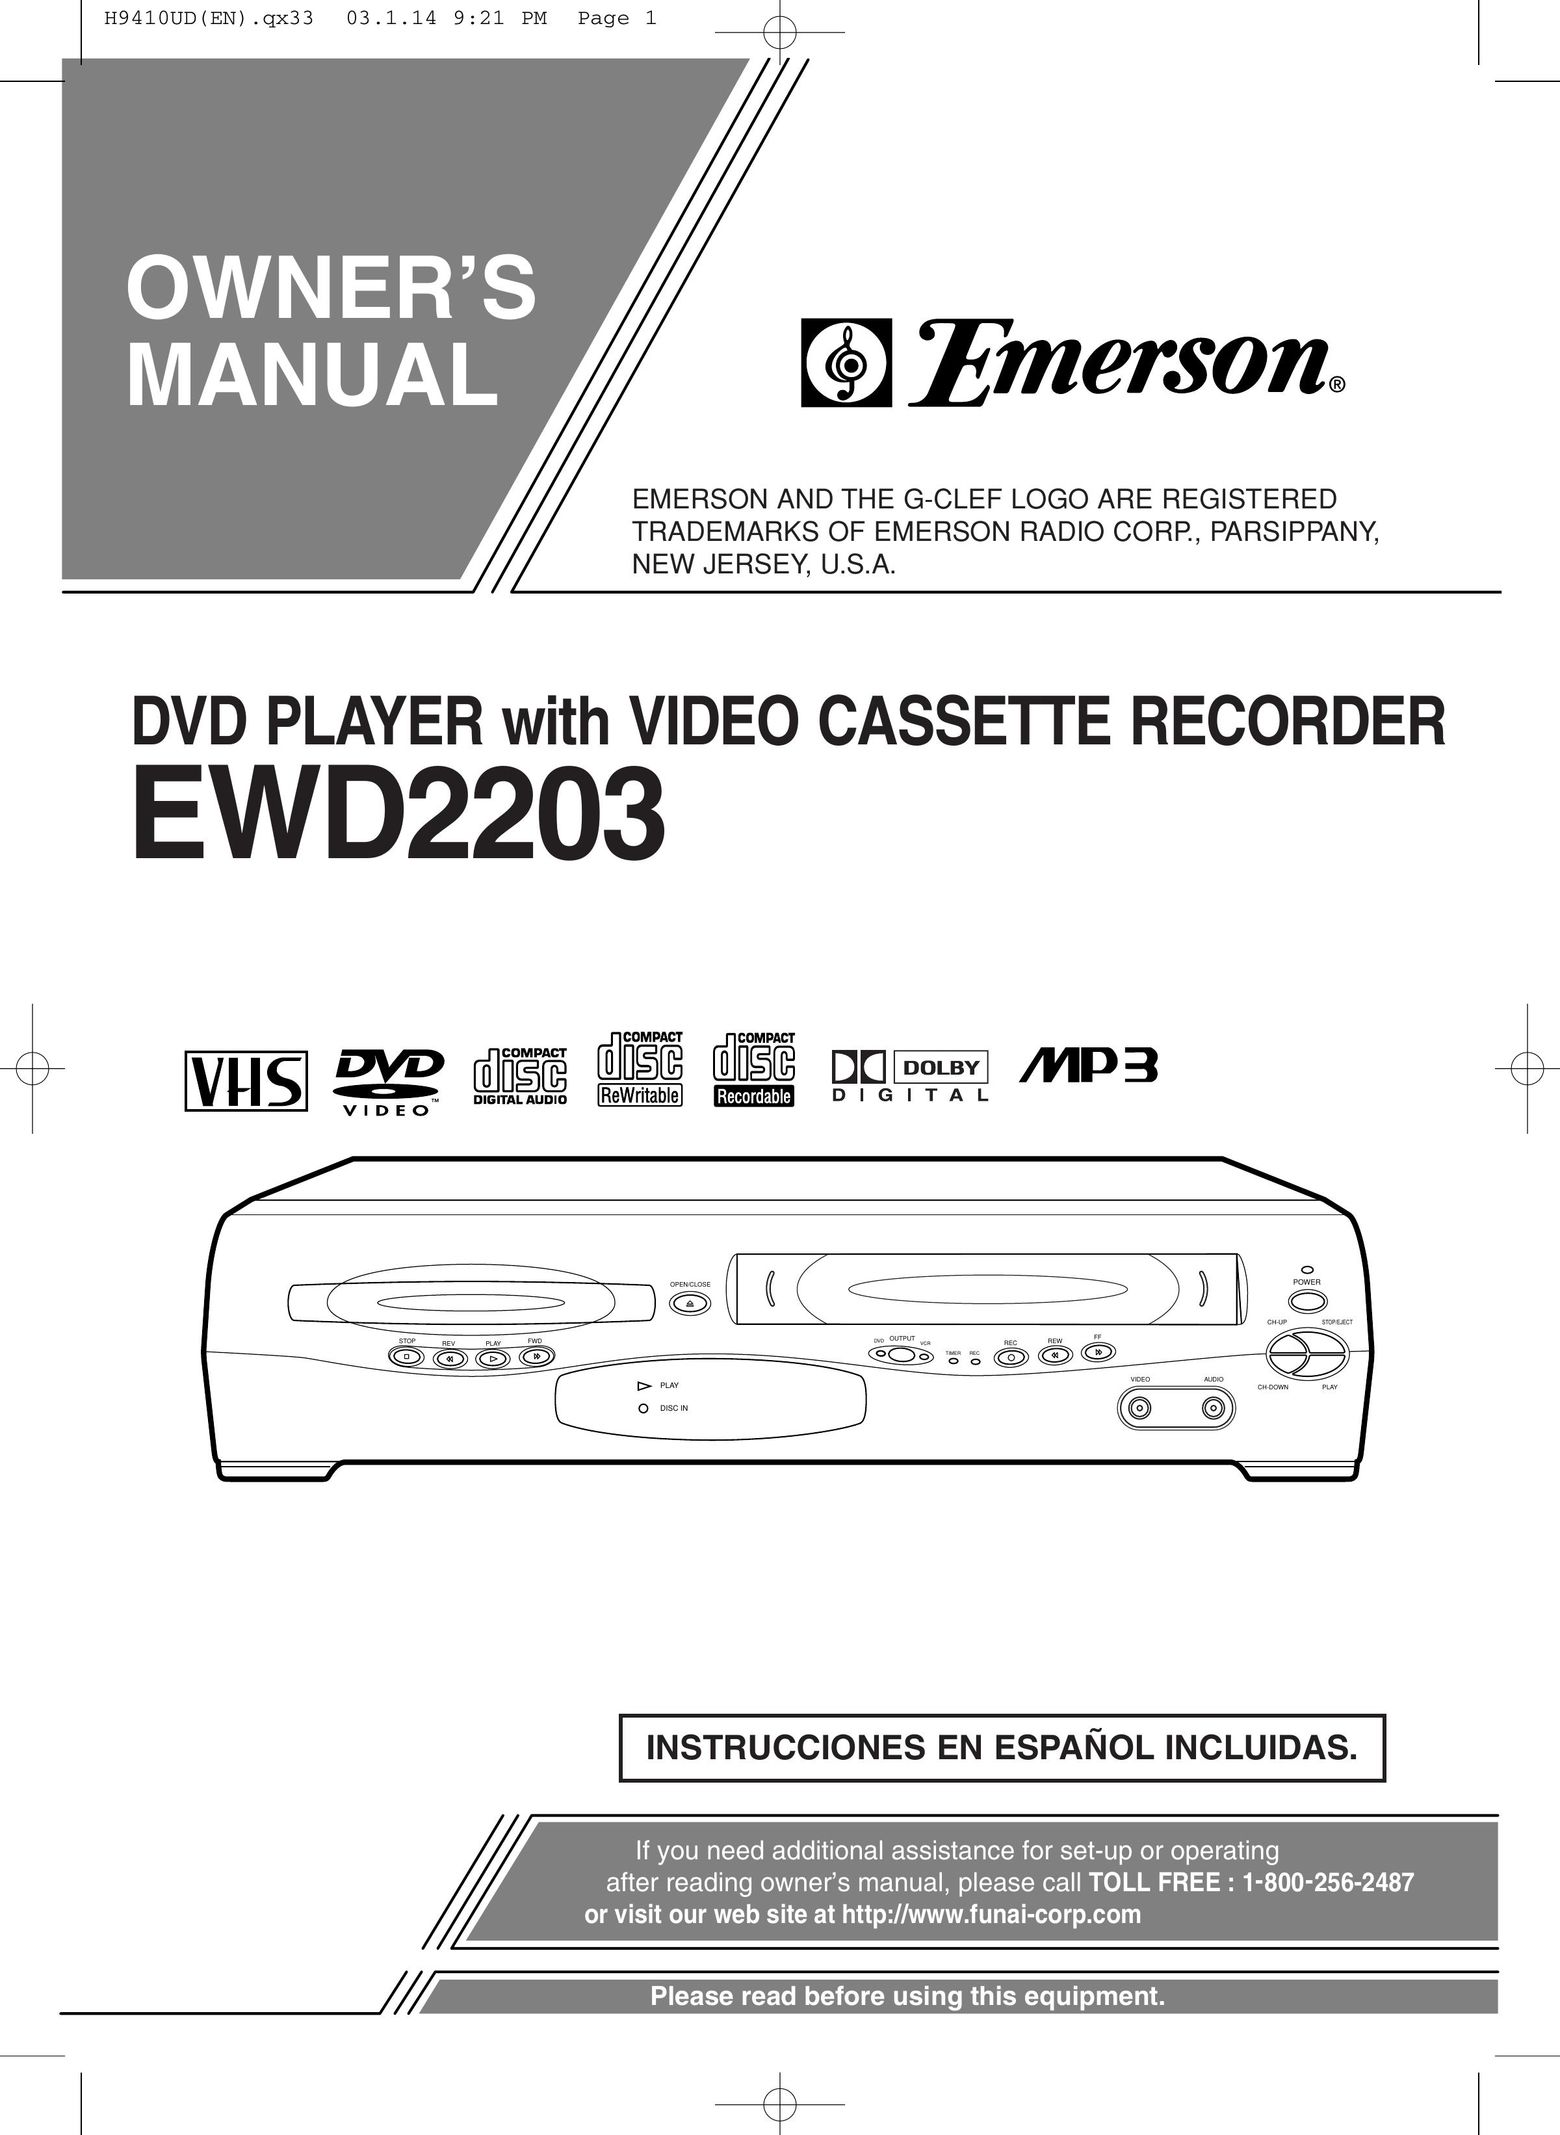 FUNAI EWD2203 DVD VCR Combo User Manual